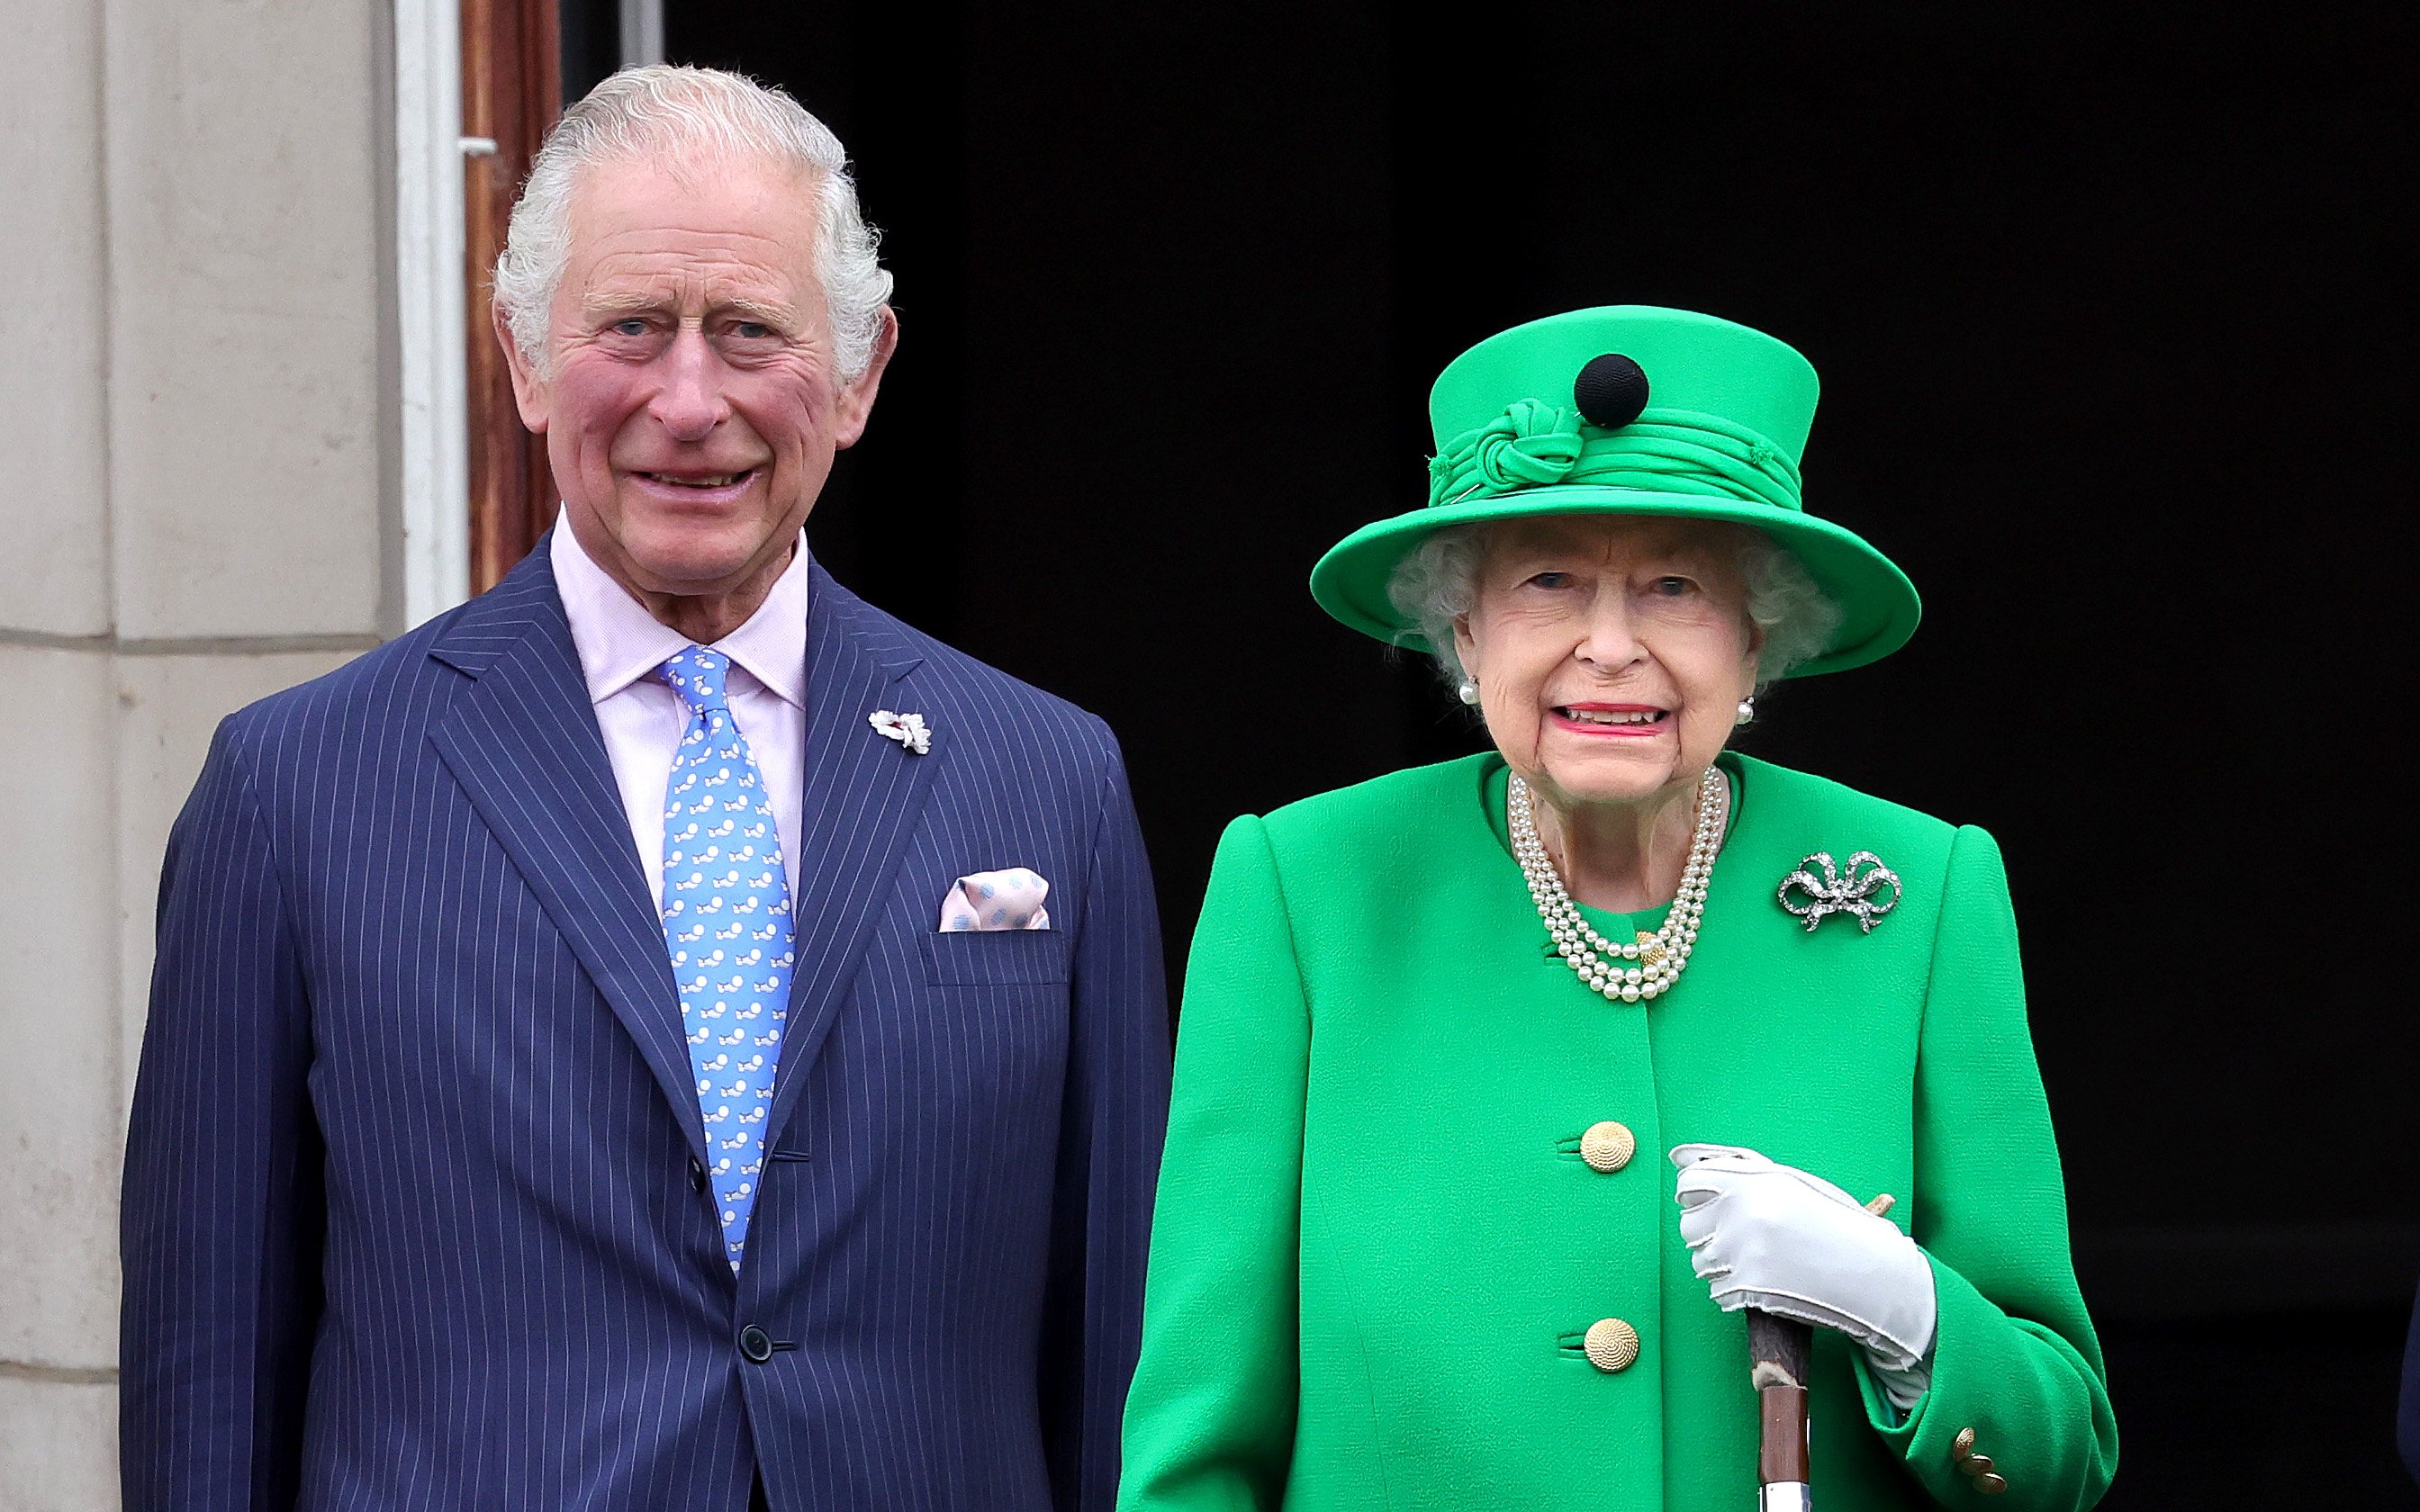 La reine Elizabeth II et le prince Charles, prince de Galles, au balcon du palais de Buckingham le 5 juin 2022 | Source : Getty Images